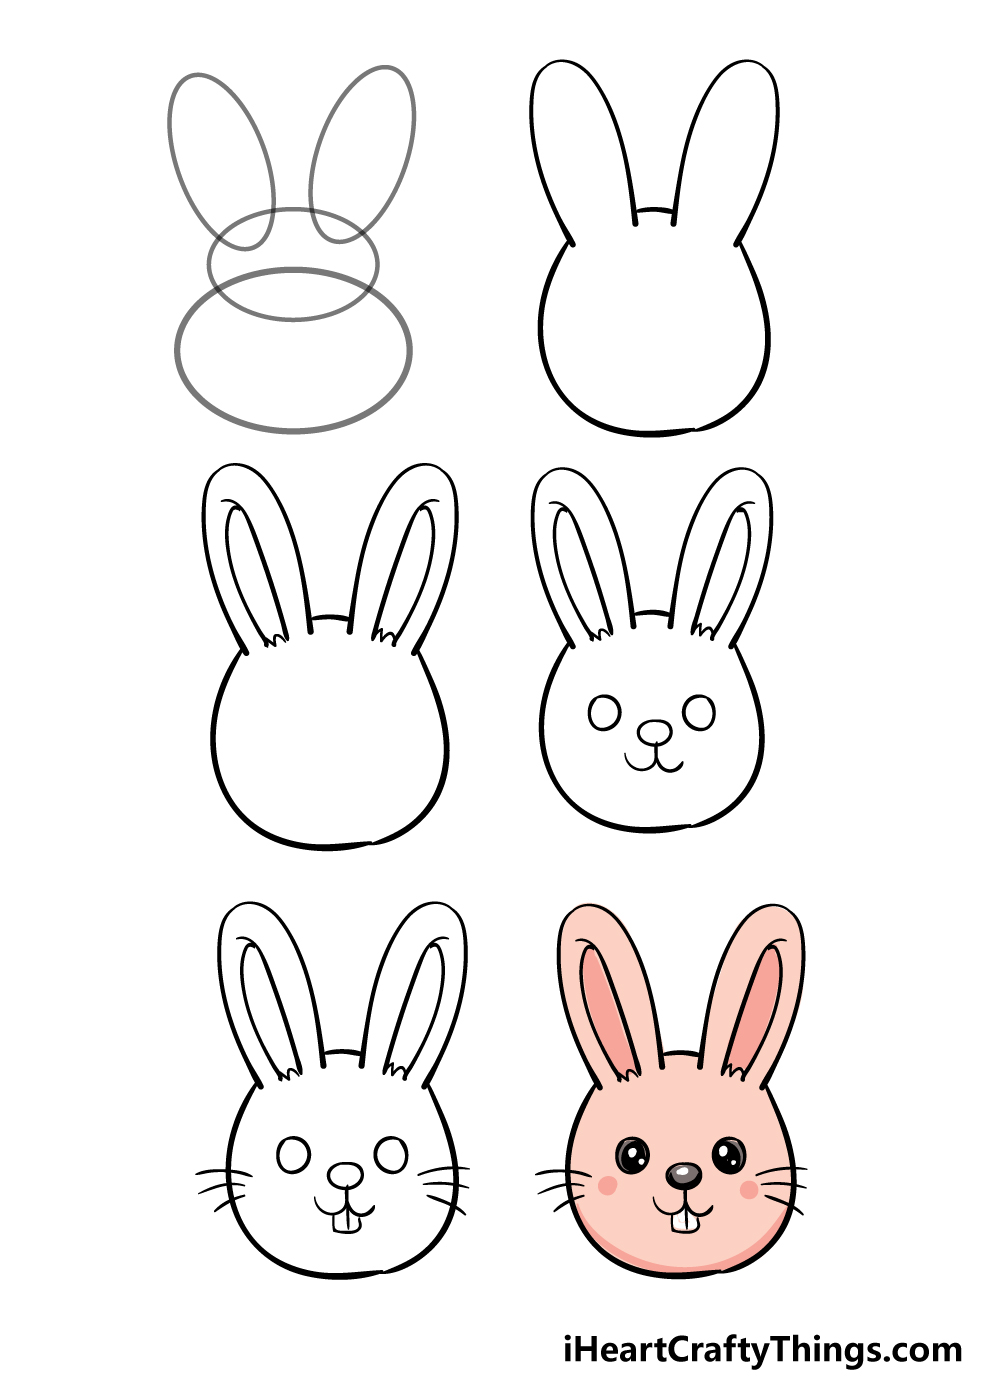 How To Draw A Cartoon Rabbit Head